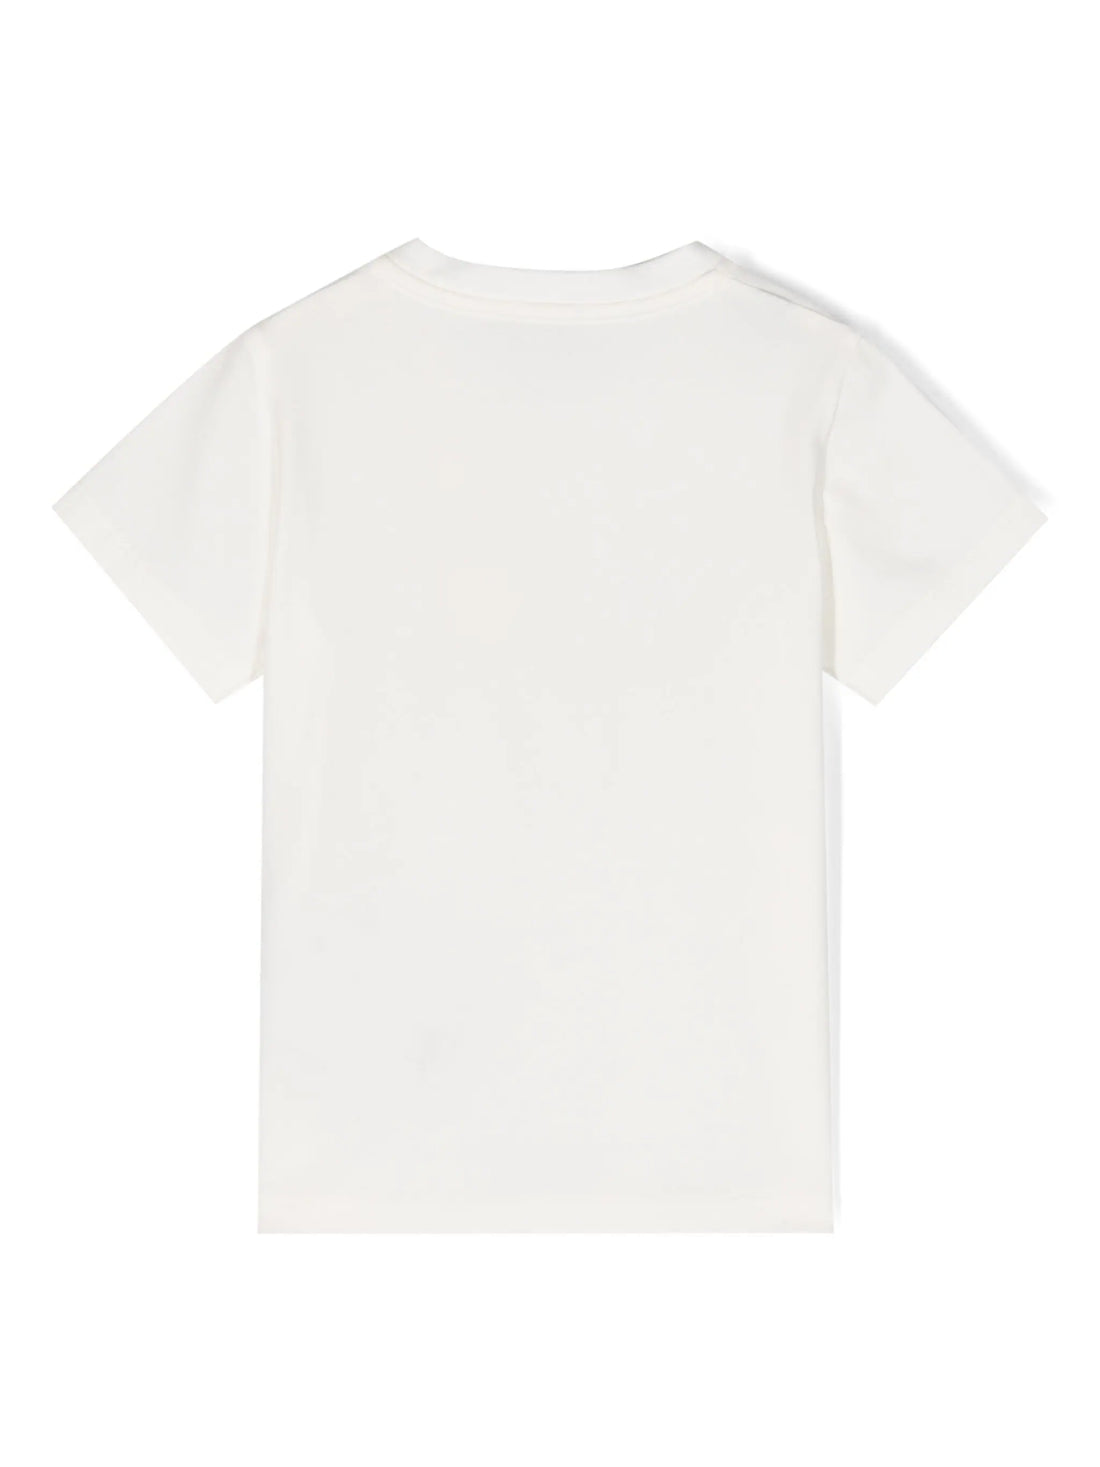 MONCLER BABY Boys Logo-Patch Stretch-Cotton T-Shirt White